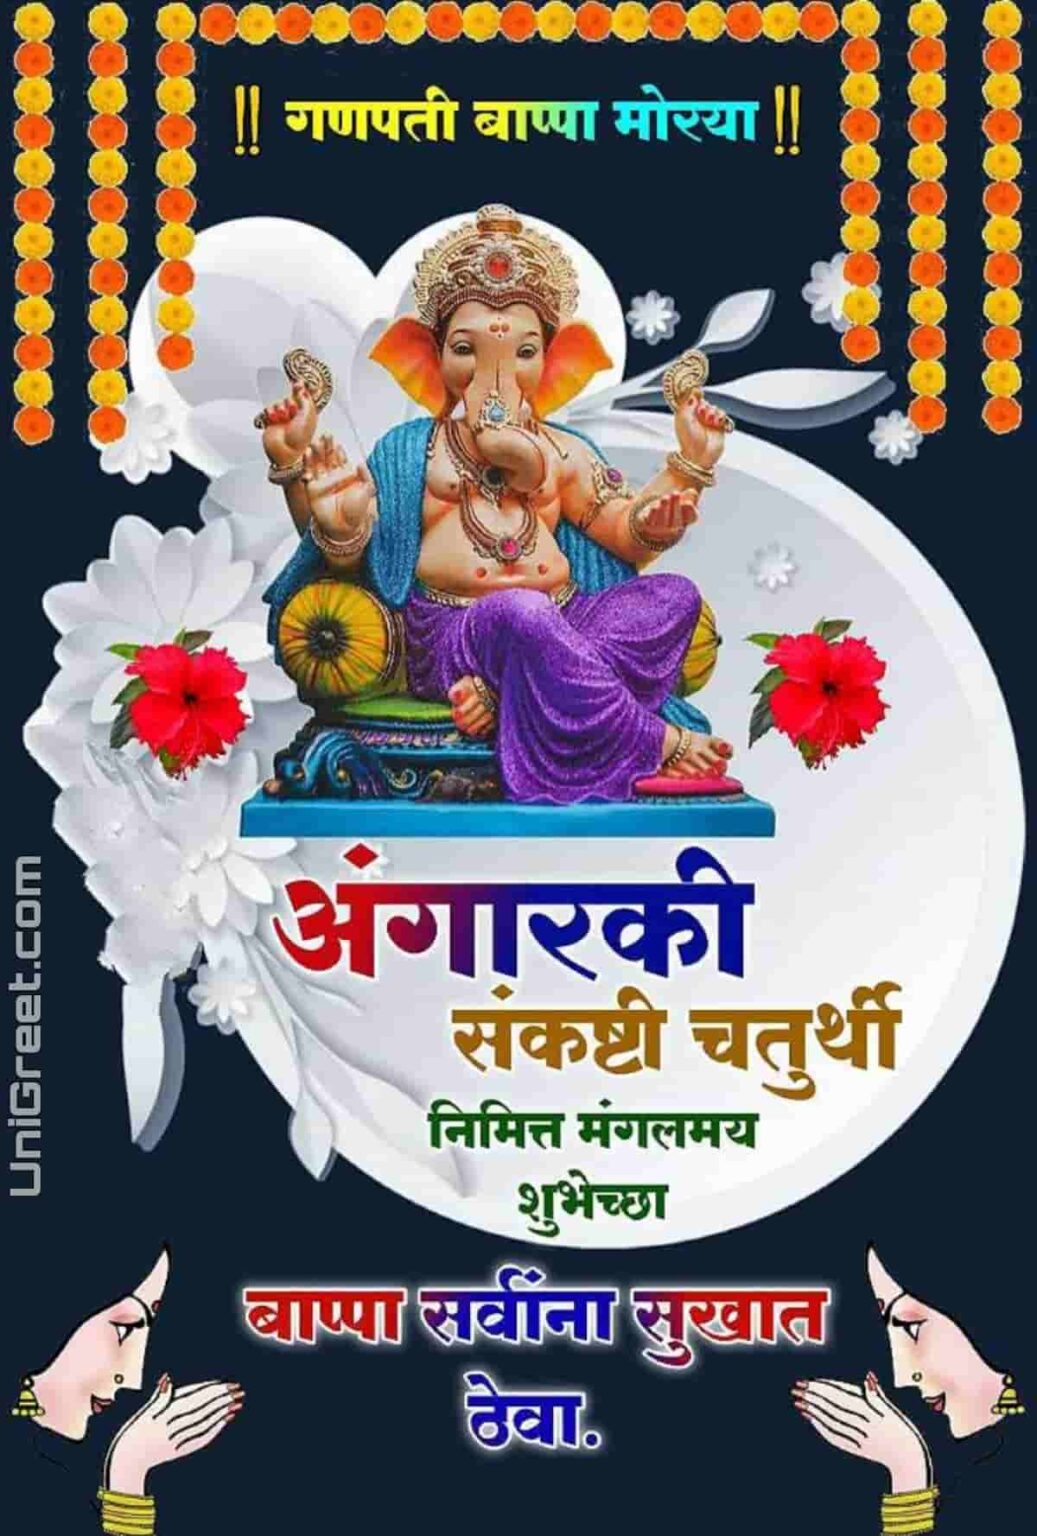 10 January 2023 Angarki Sankashti Chaturthi Wishes Images Banner Background Status Photos In Marathi 2216